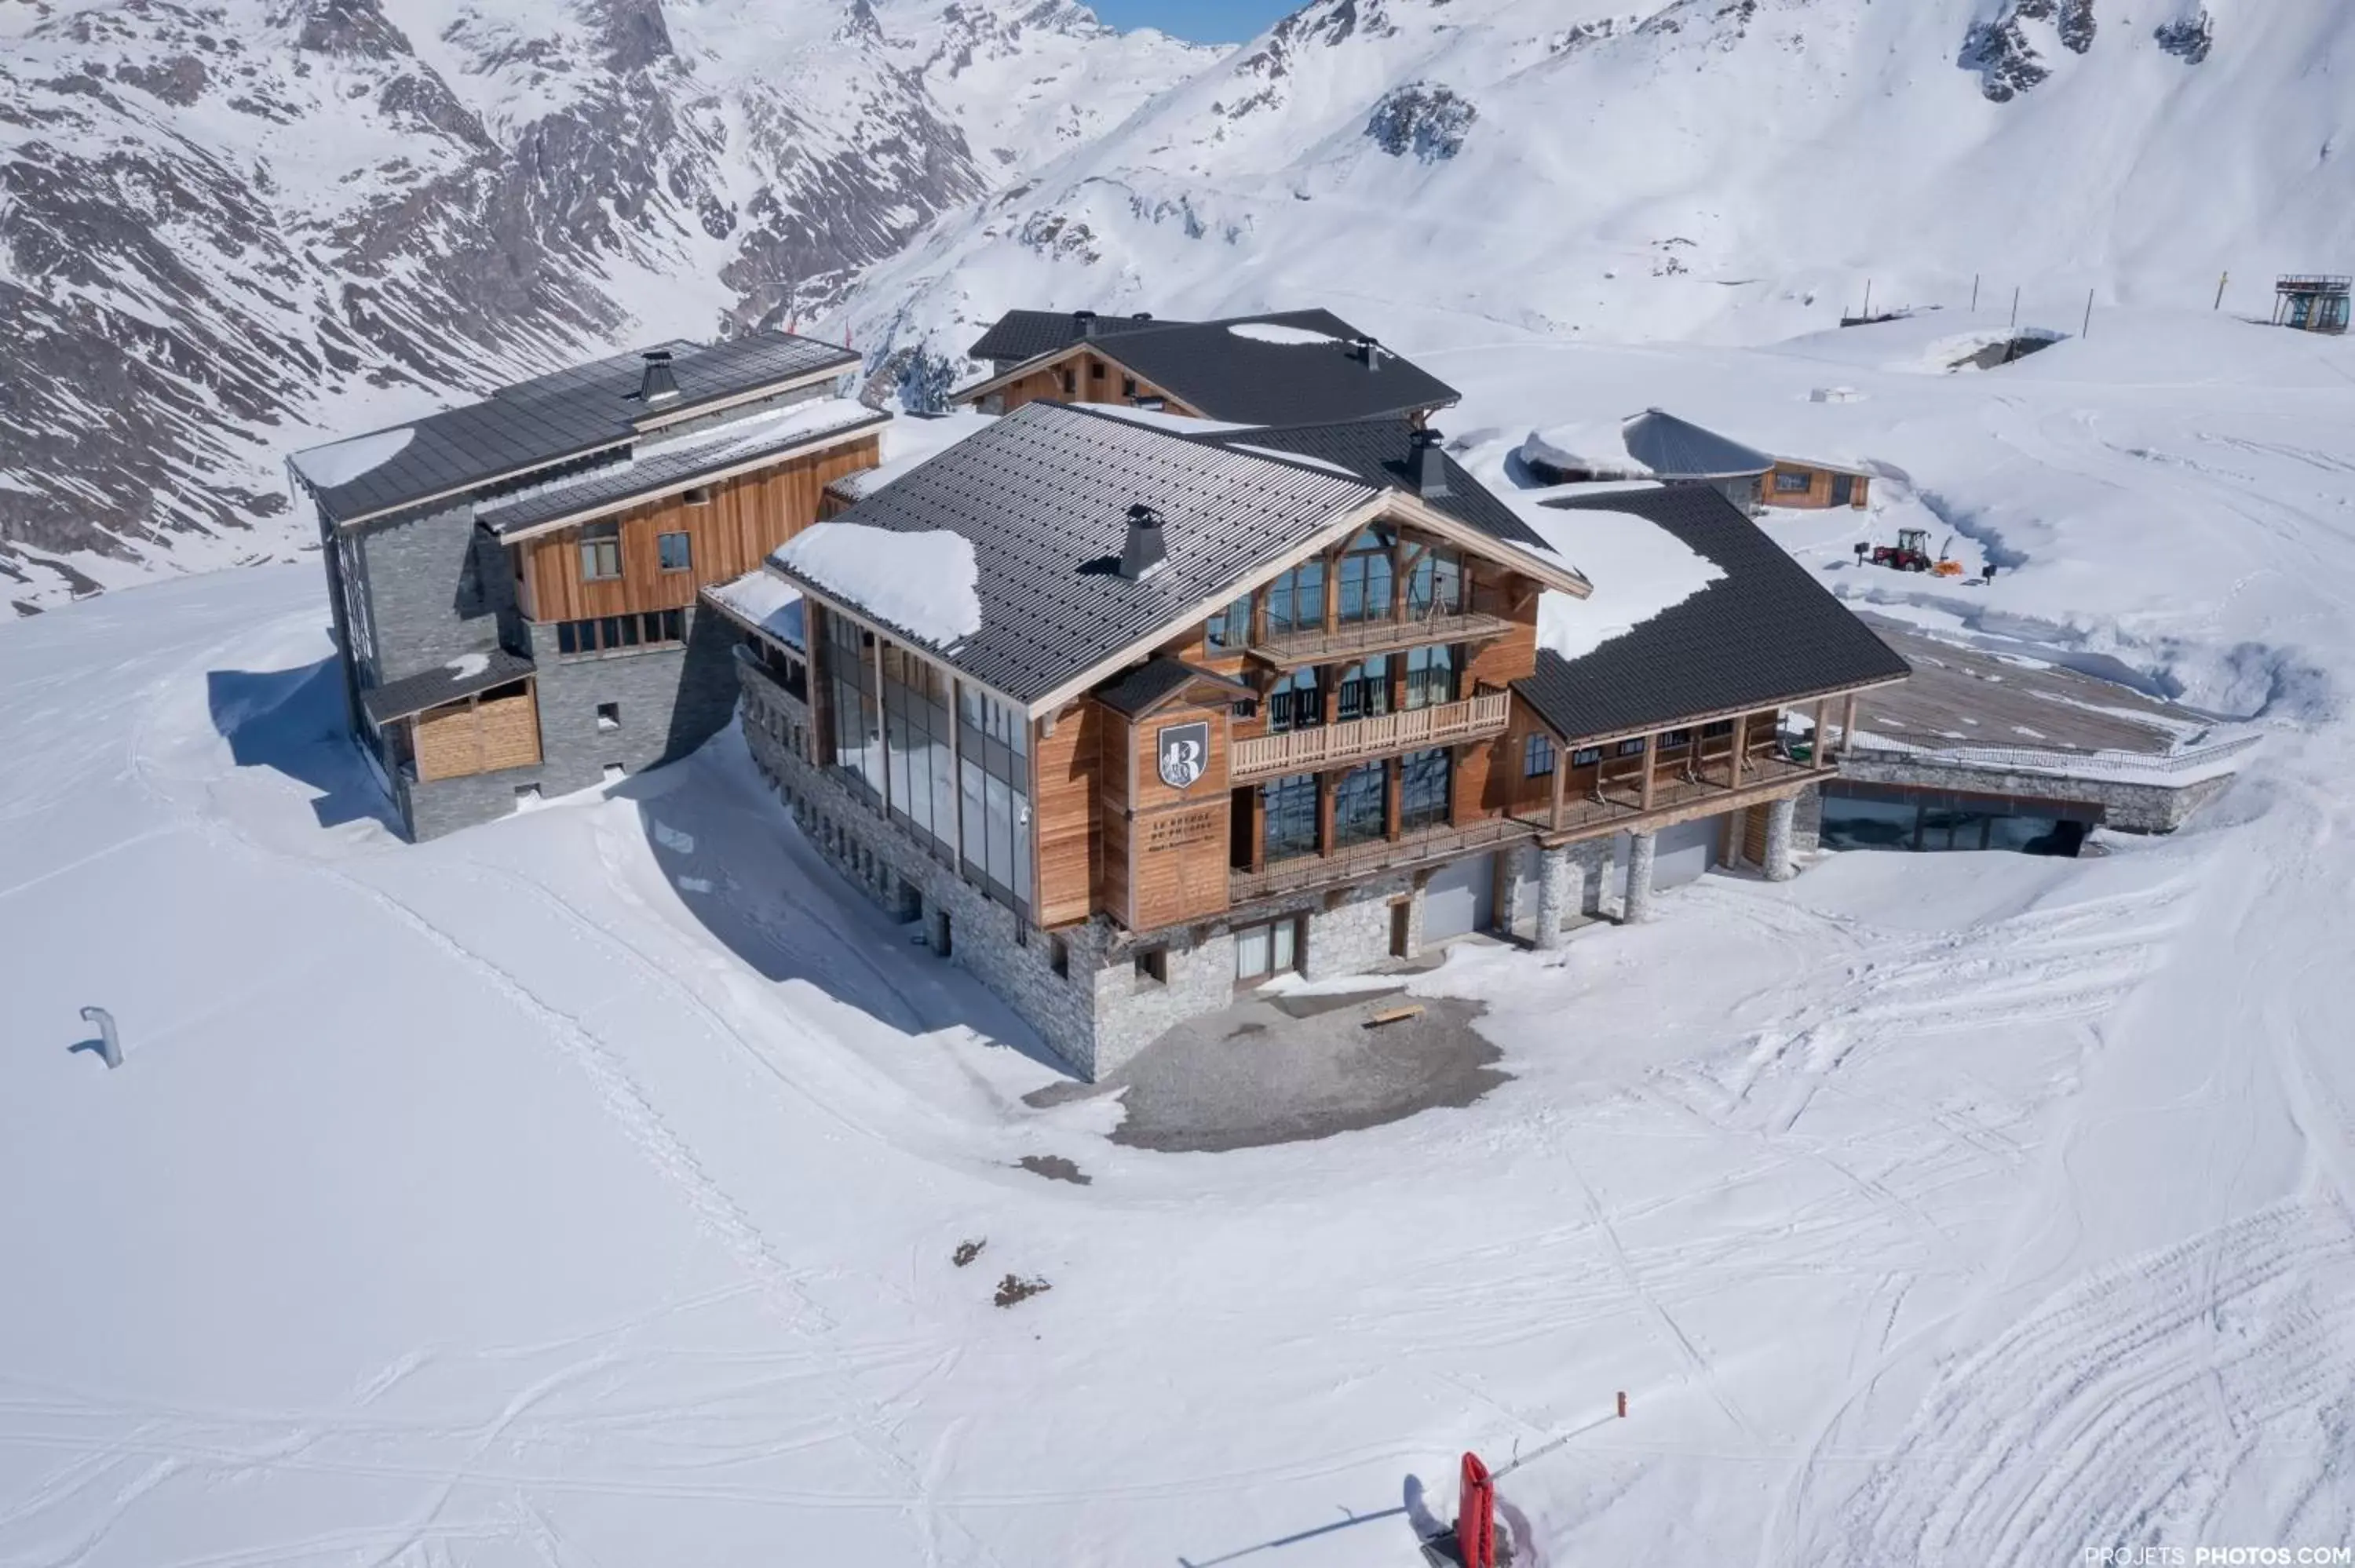 Property building, Winter in Le Refuge de Solaise - 2551 m Altitude